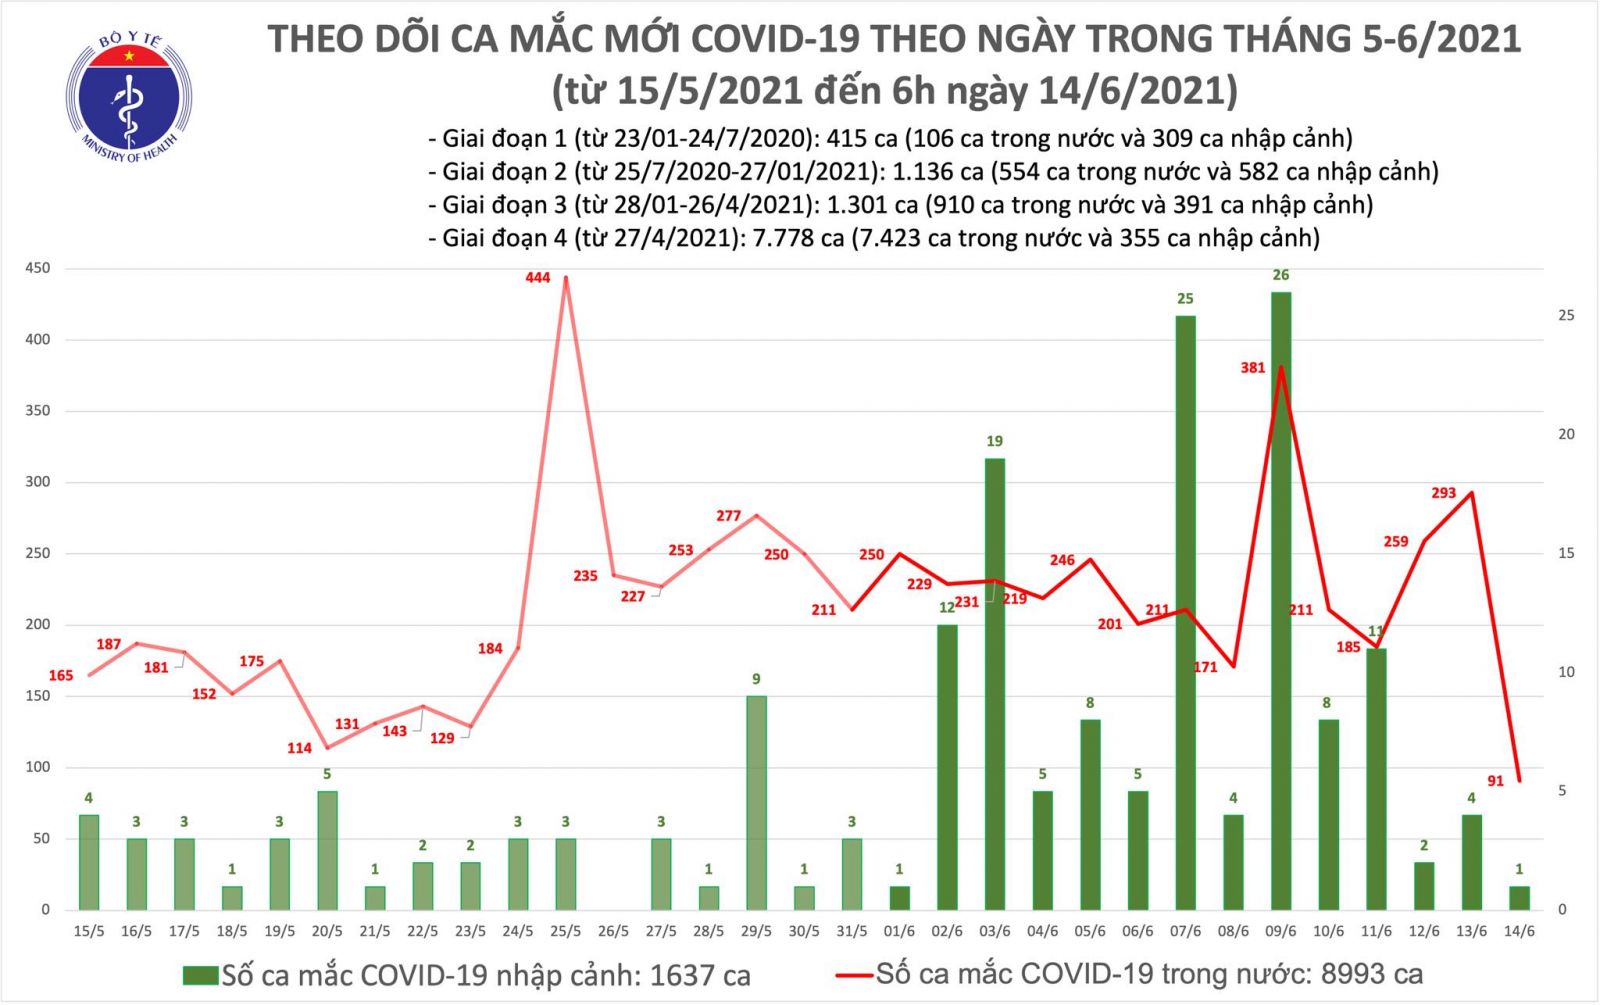 Sáng 14/6: Thêm 92 ca mắc COVID-19, TPHCM vẫn nhiều nhất với 30 trường hợp